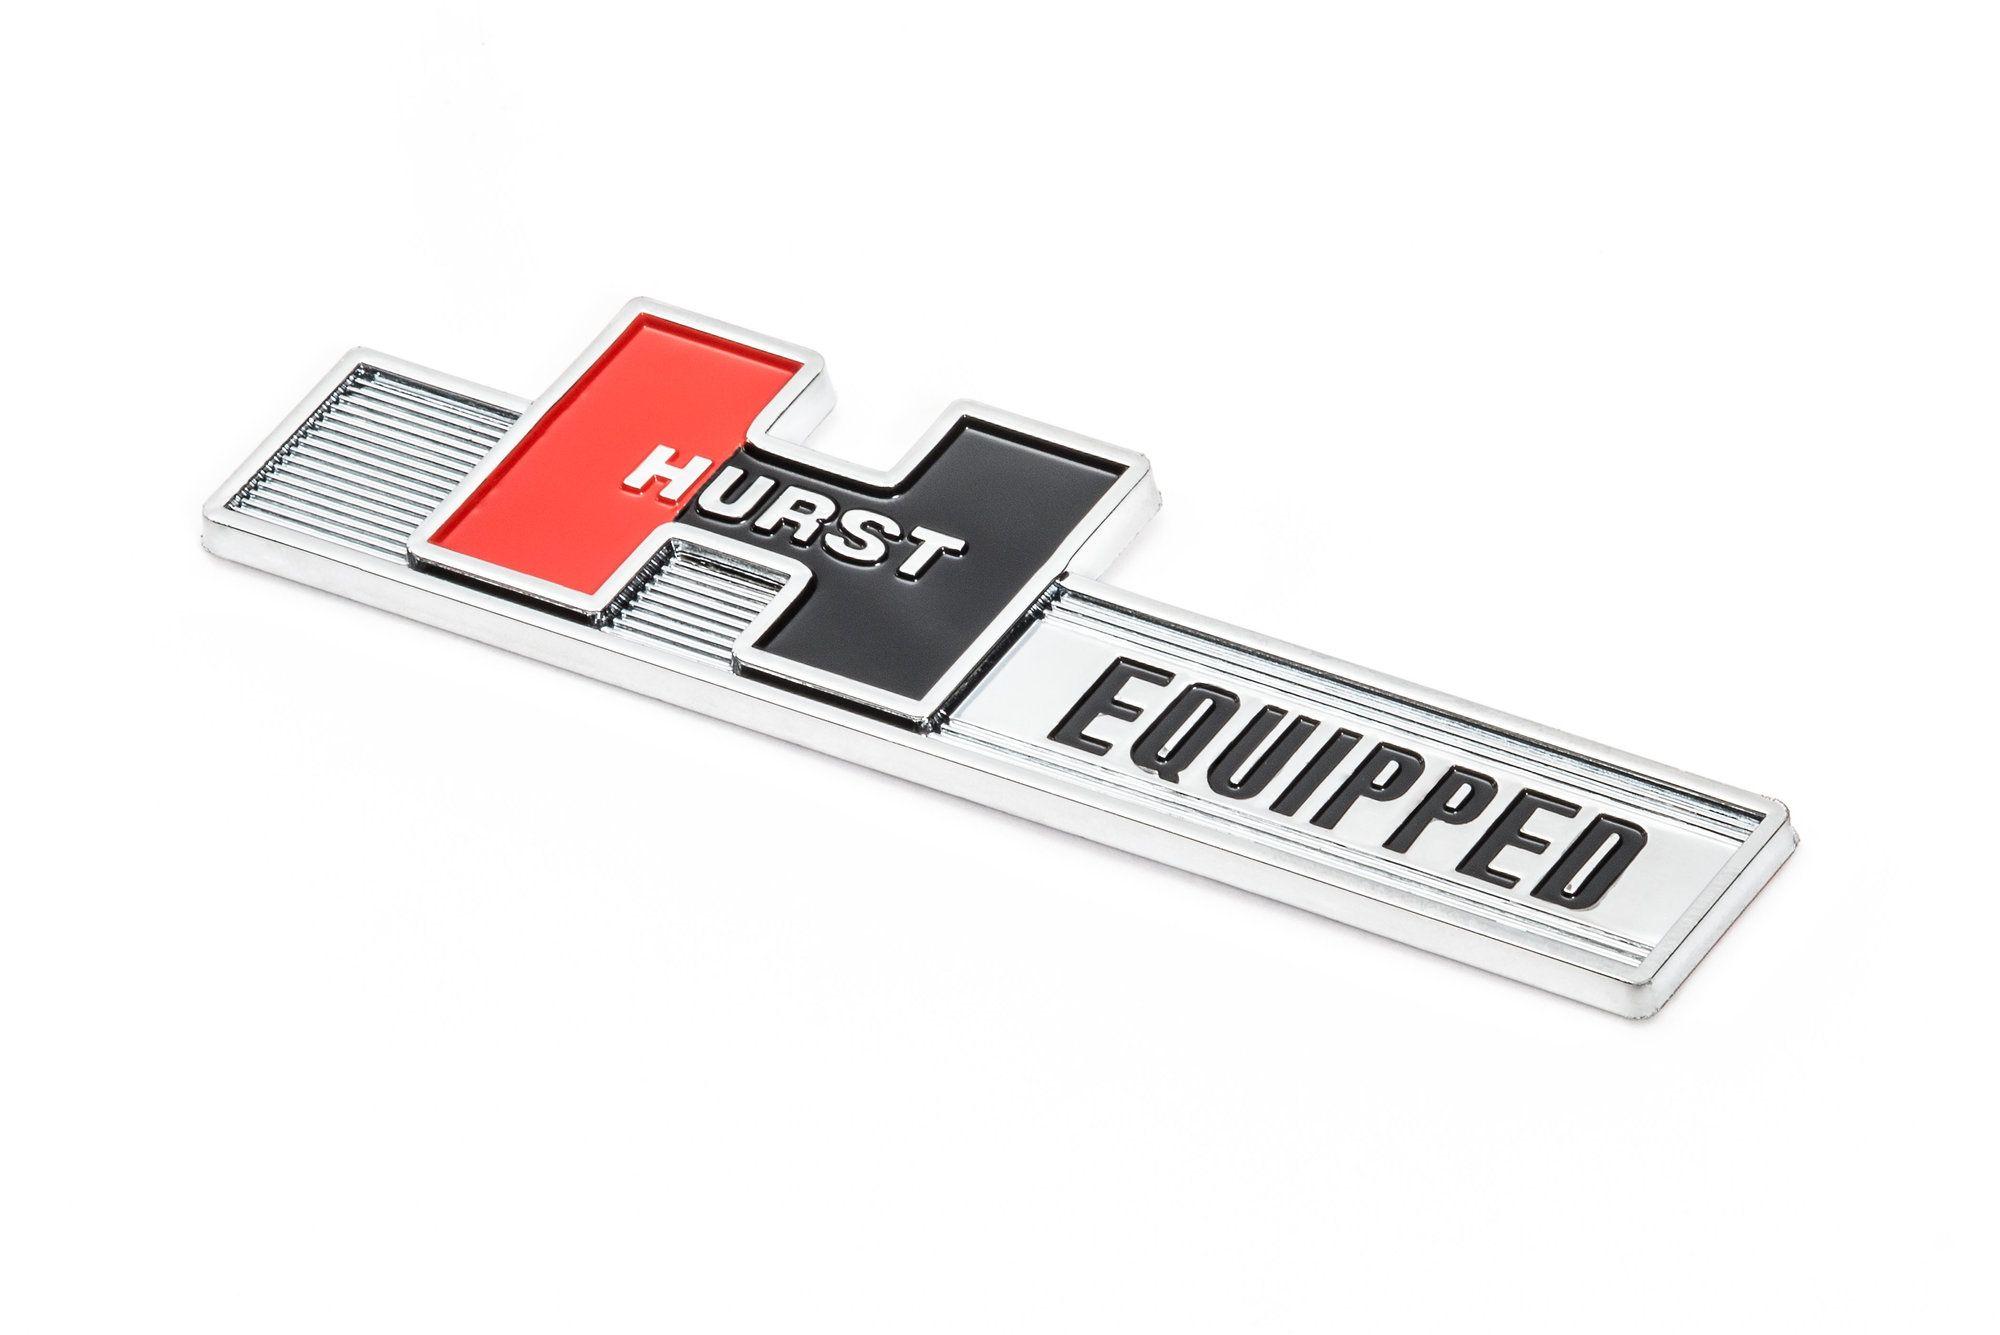 Hurst Logo - Hurst Shifters 136-1000 Hurst Equipped Emblem